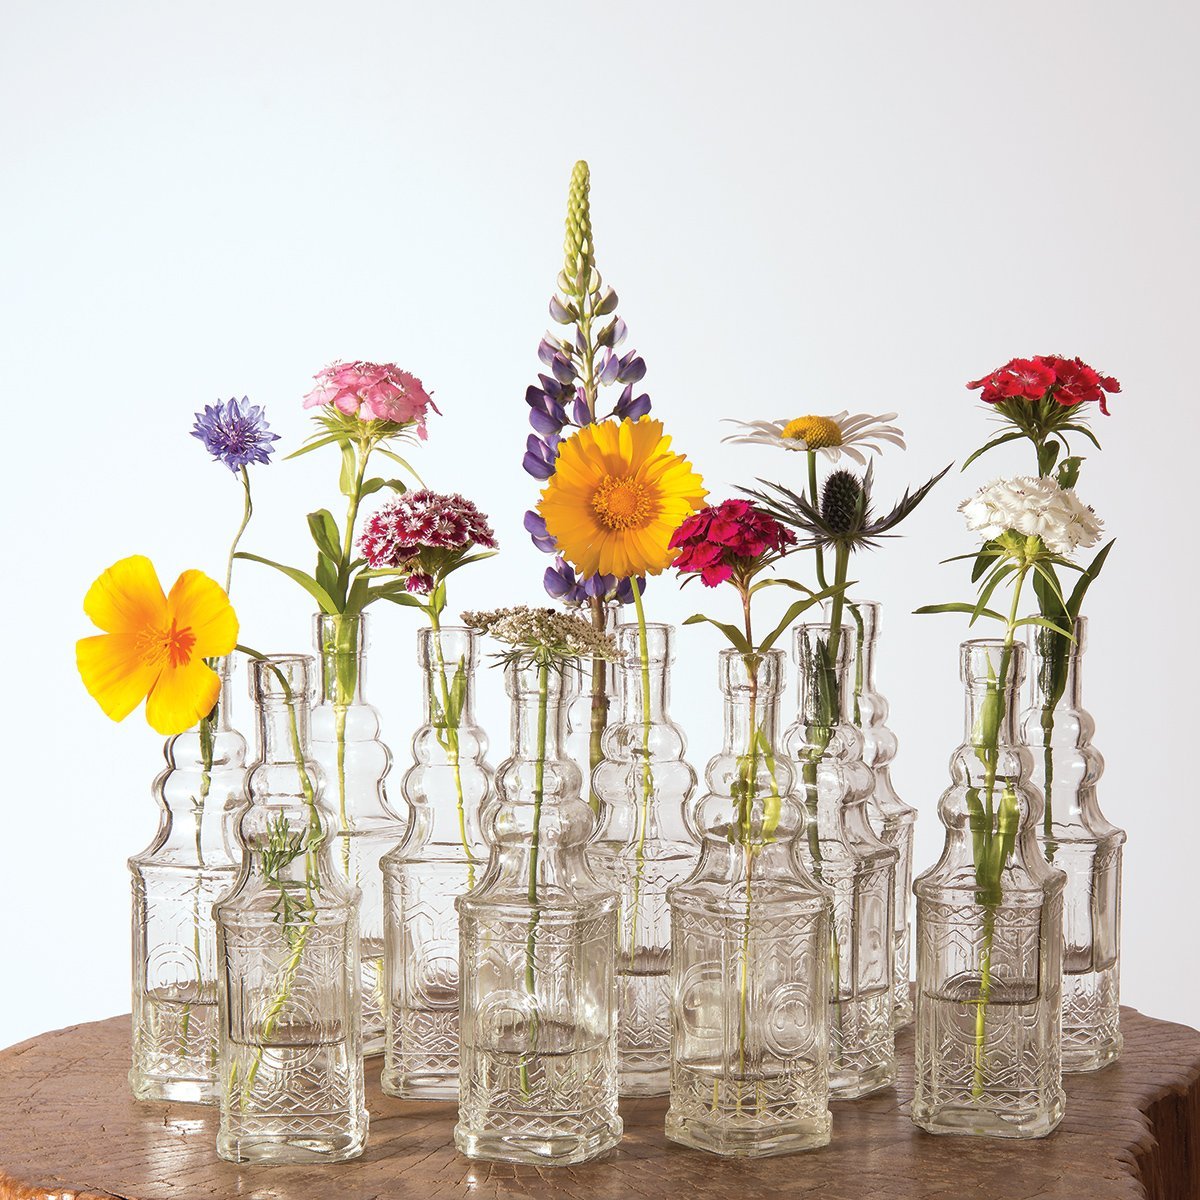 6.5&quot; Ella Clear Vintage Glass Bottle with Cork - DIY Wedding Flower Bud Vases - PaperLanternStore.com - Paper Lanterns, Decor, Party Lights &amp; More